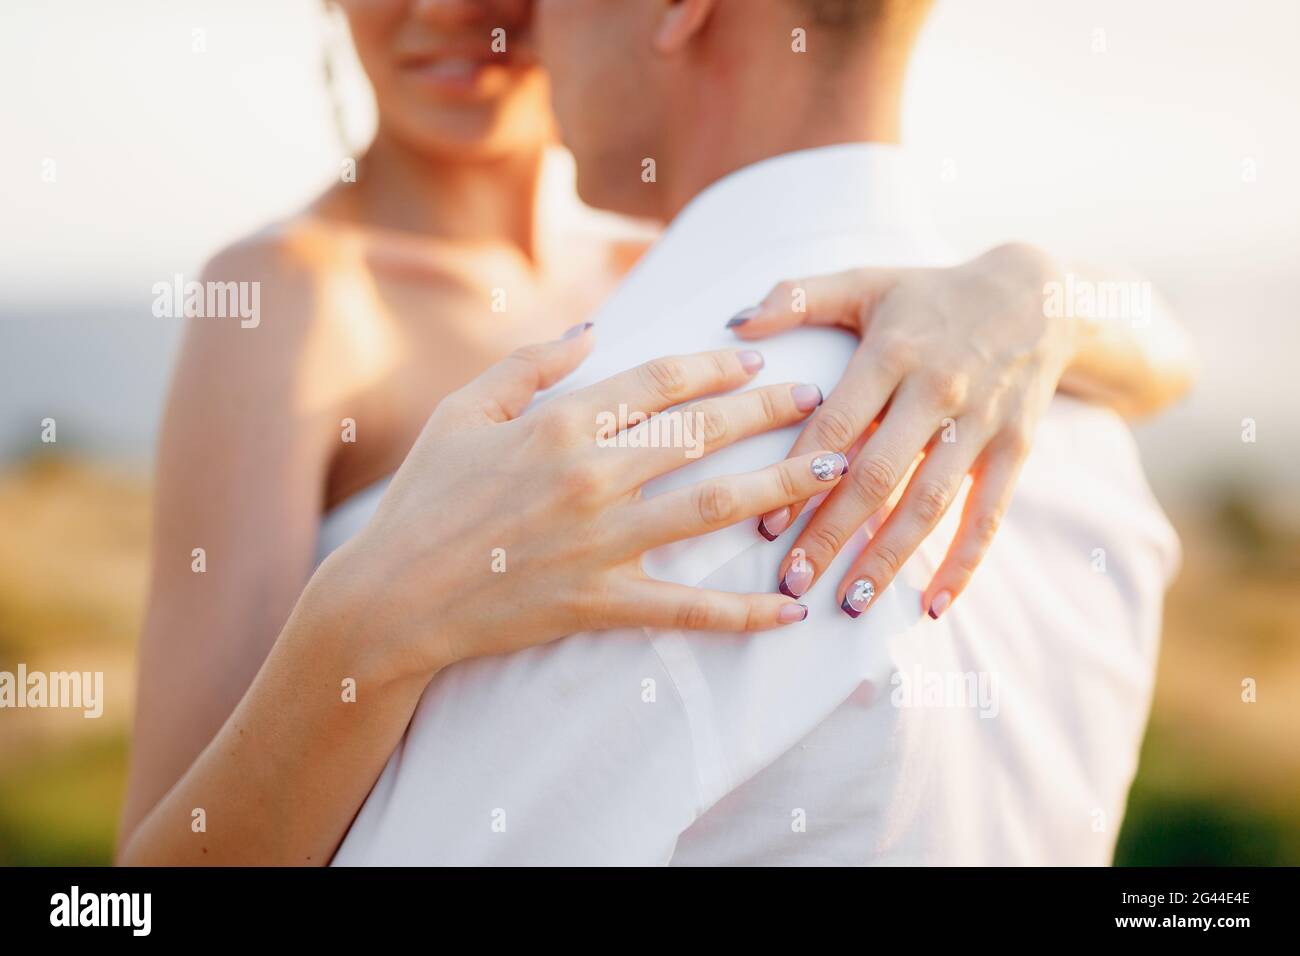 Die Braut und der Bräutigam umarmen sich, die Braut legte ihre Hände auf den Rücken des Bräutigams, Nahaufnahme Stockfoto